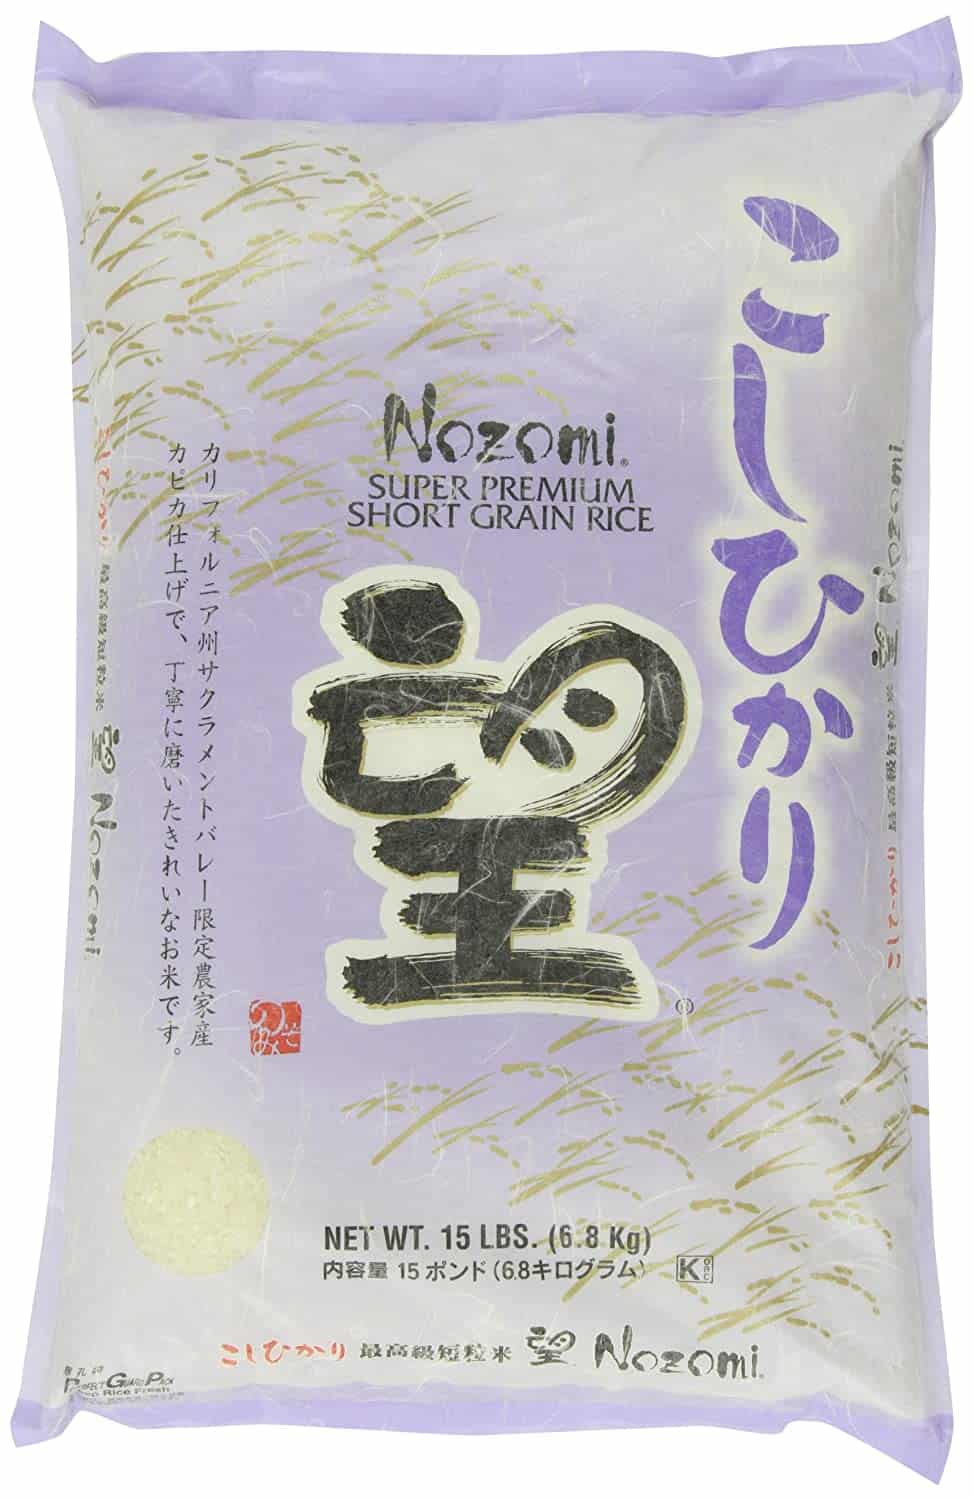 Arroz de sushi de grão curto Nozomi